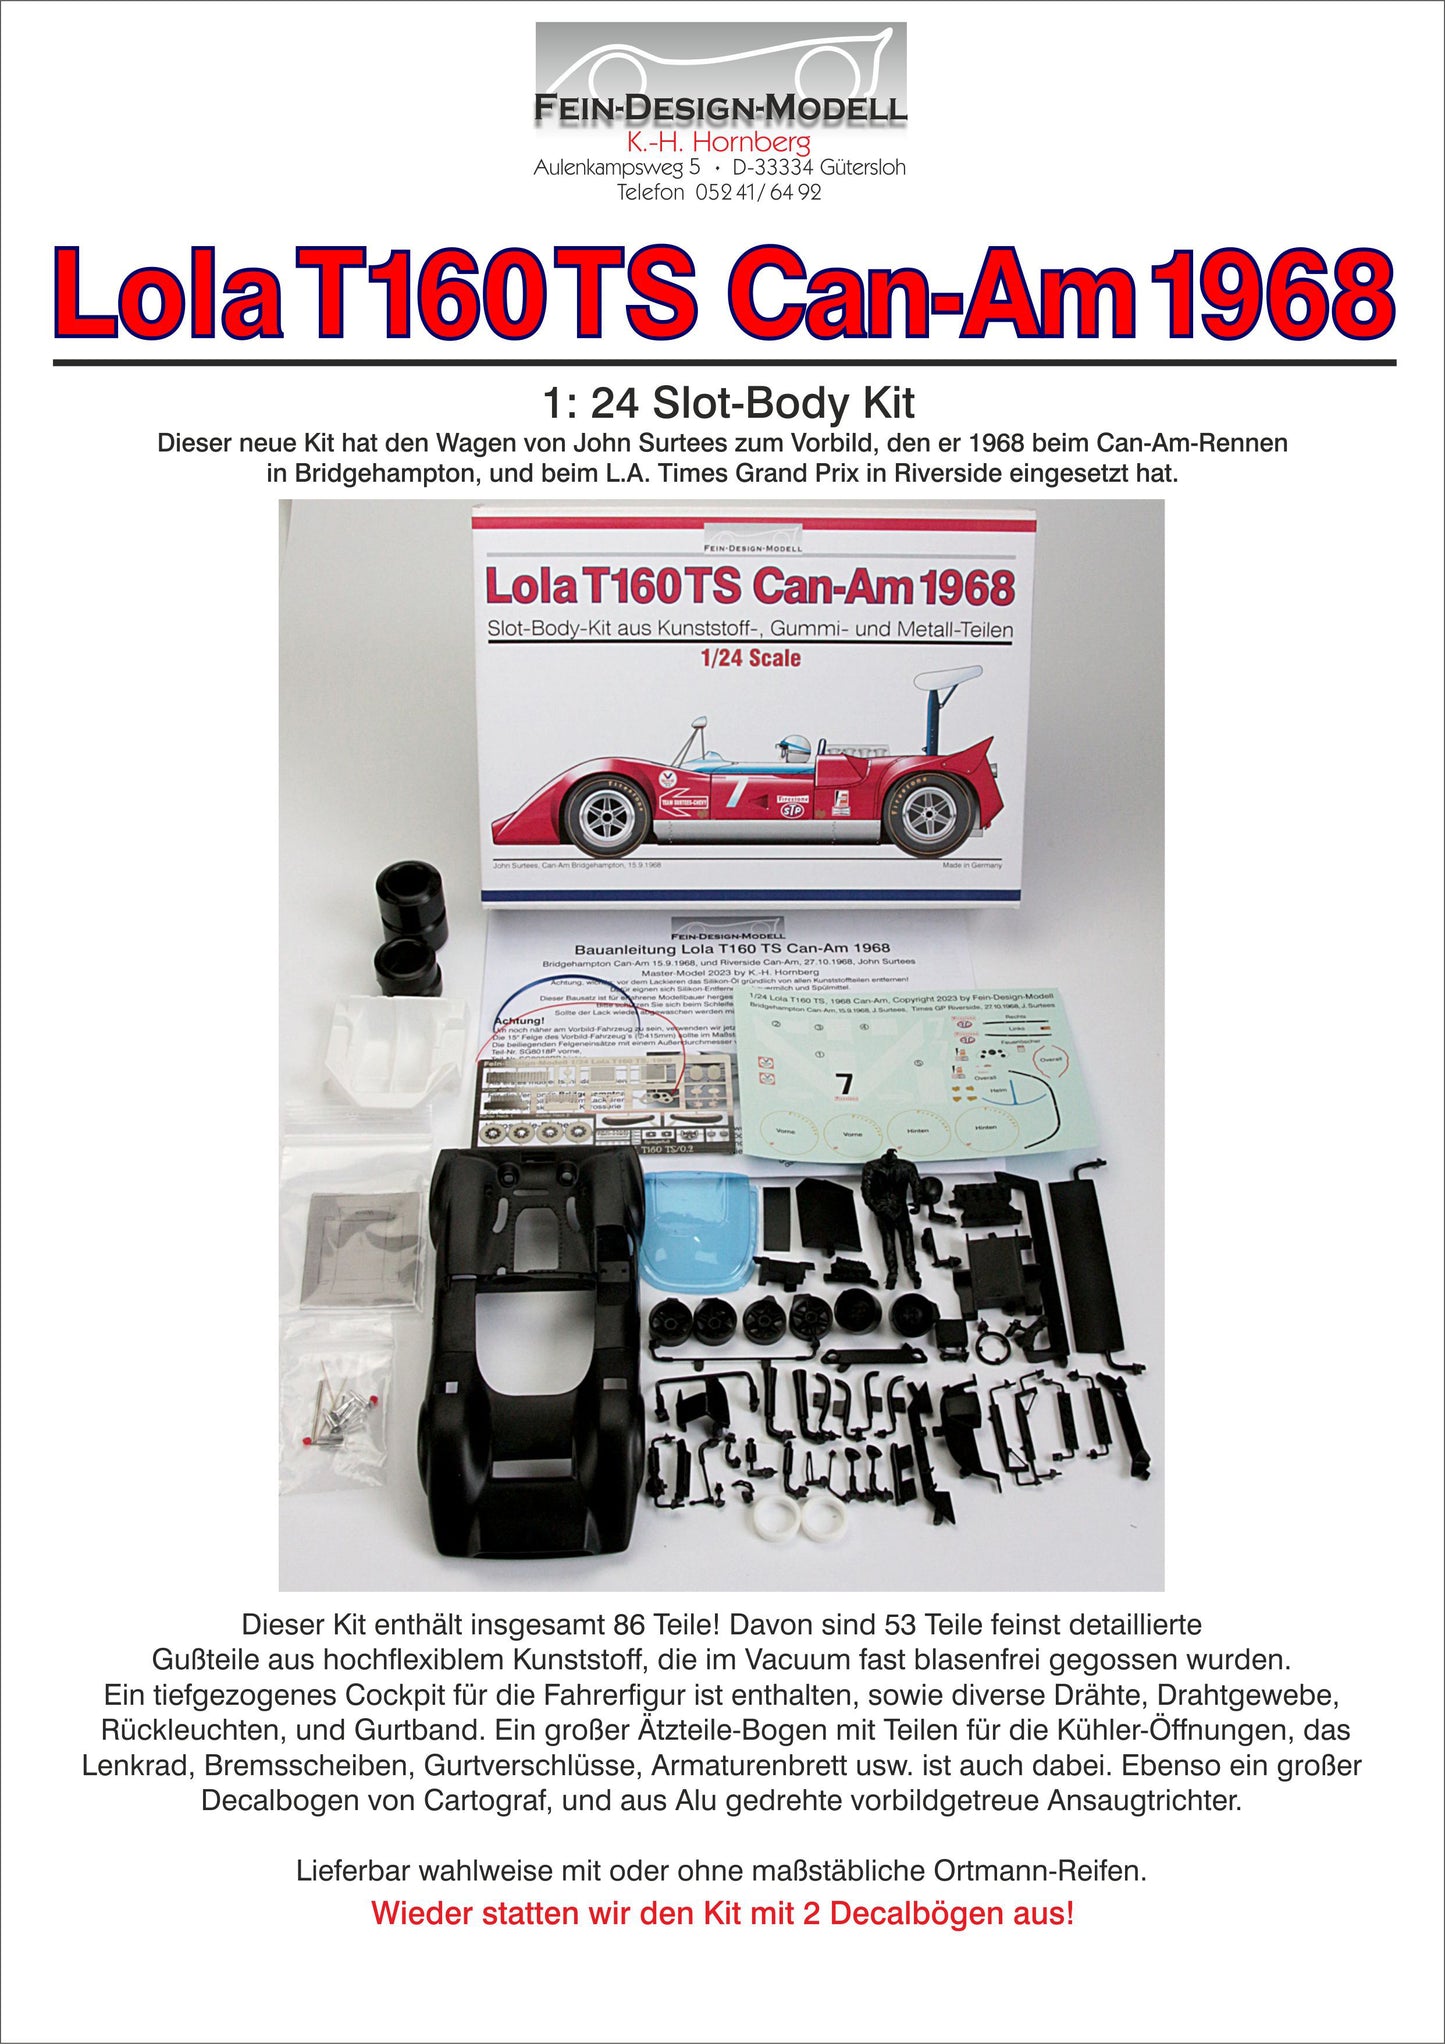 Fein Design "Lola T160 TS  Can-Am 1968"